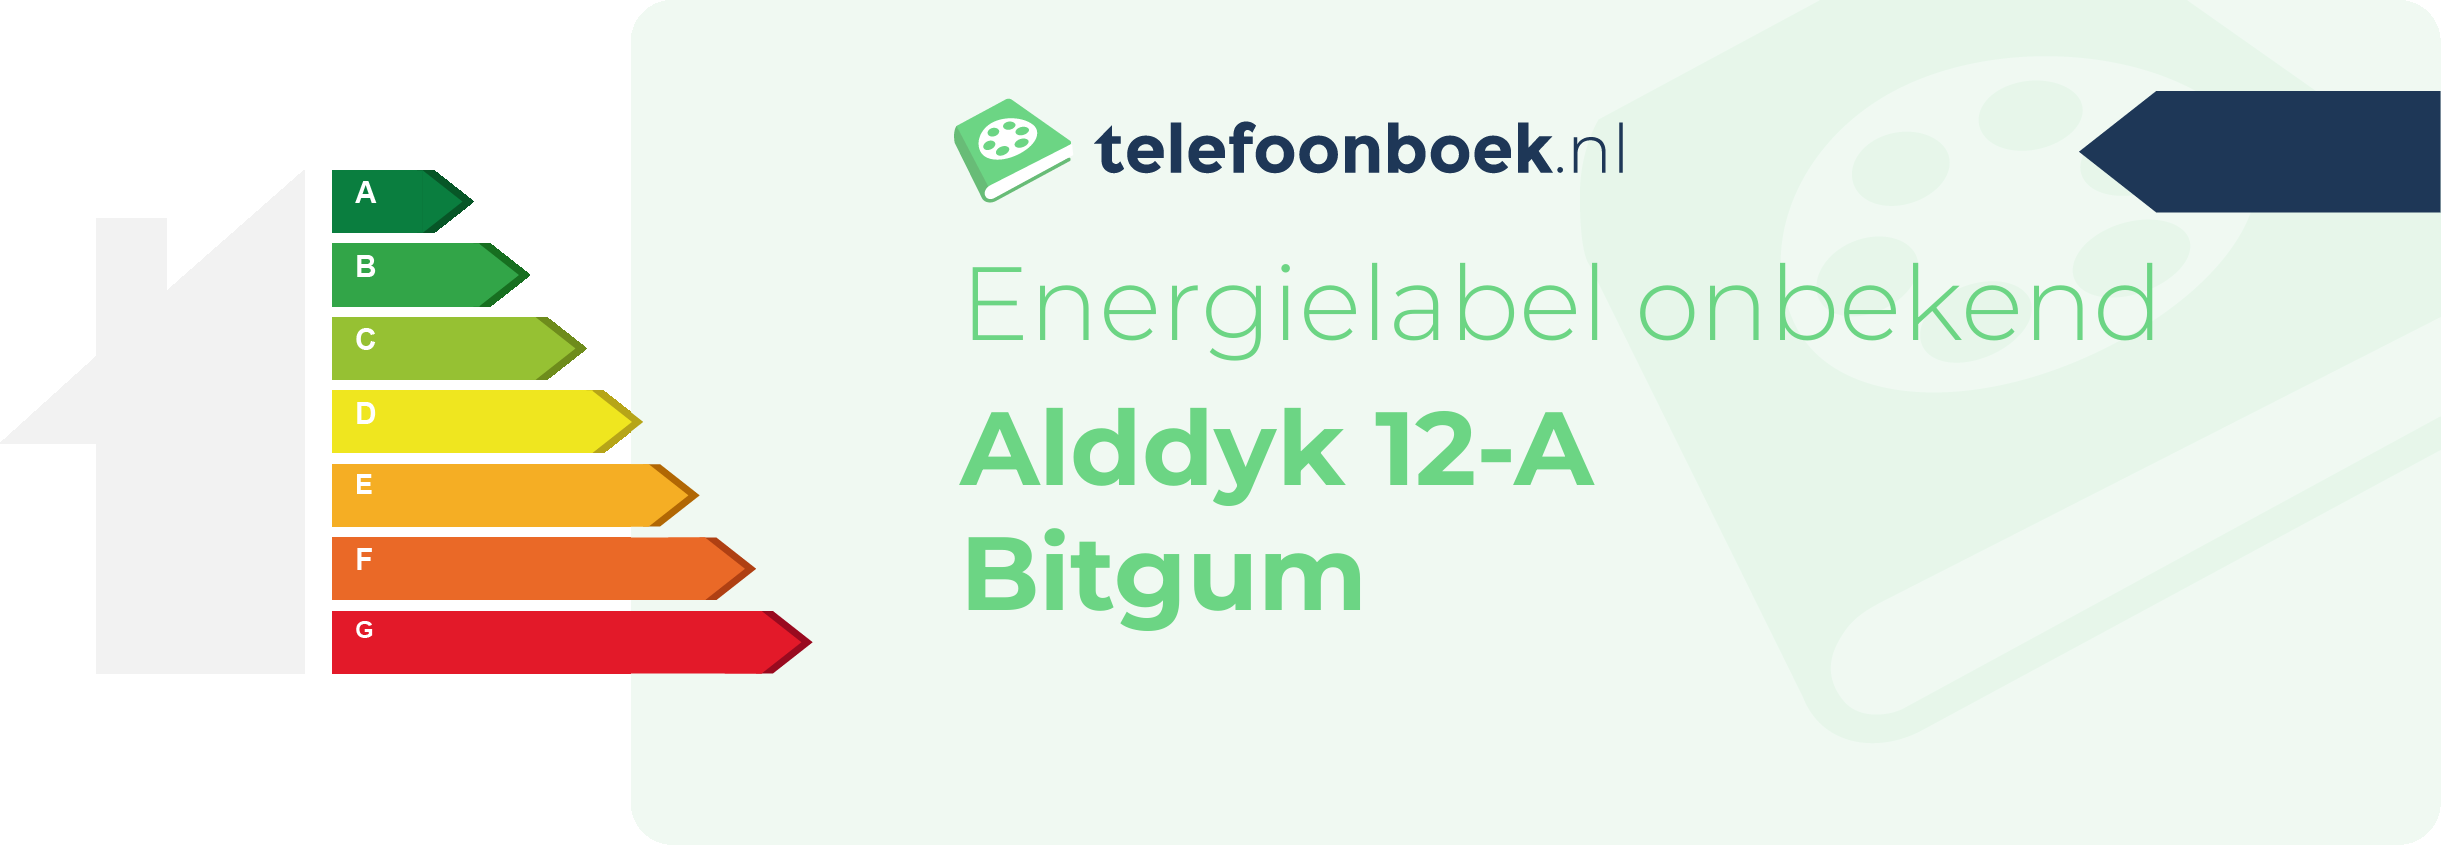 Energielabel Alddyk 12-A Bitgum